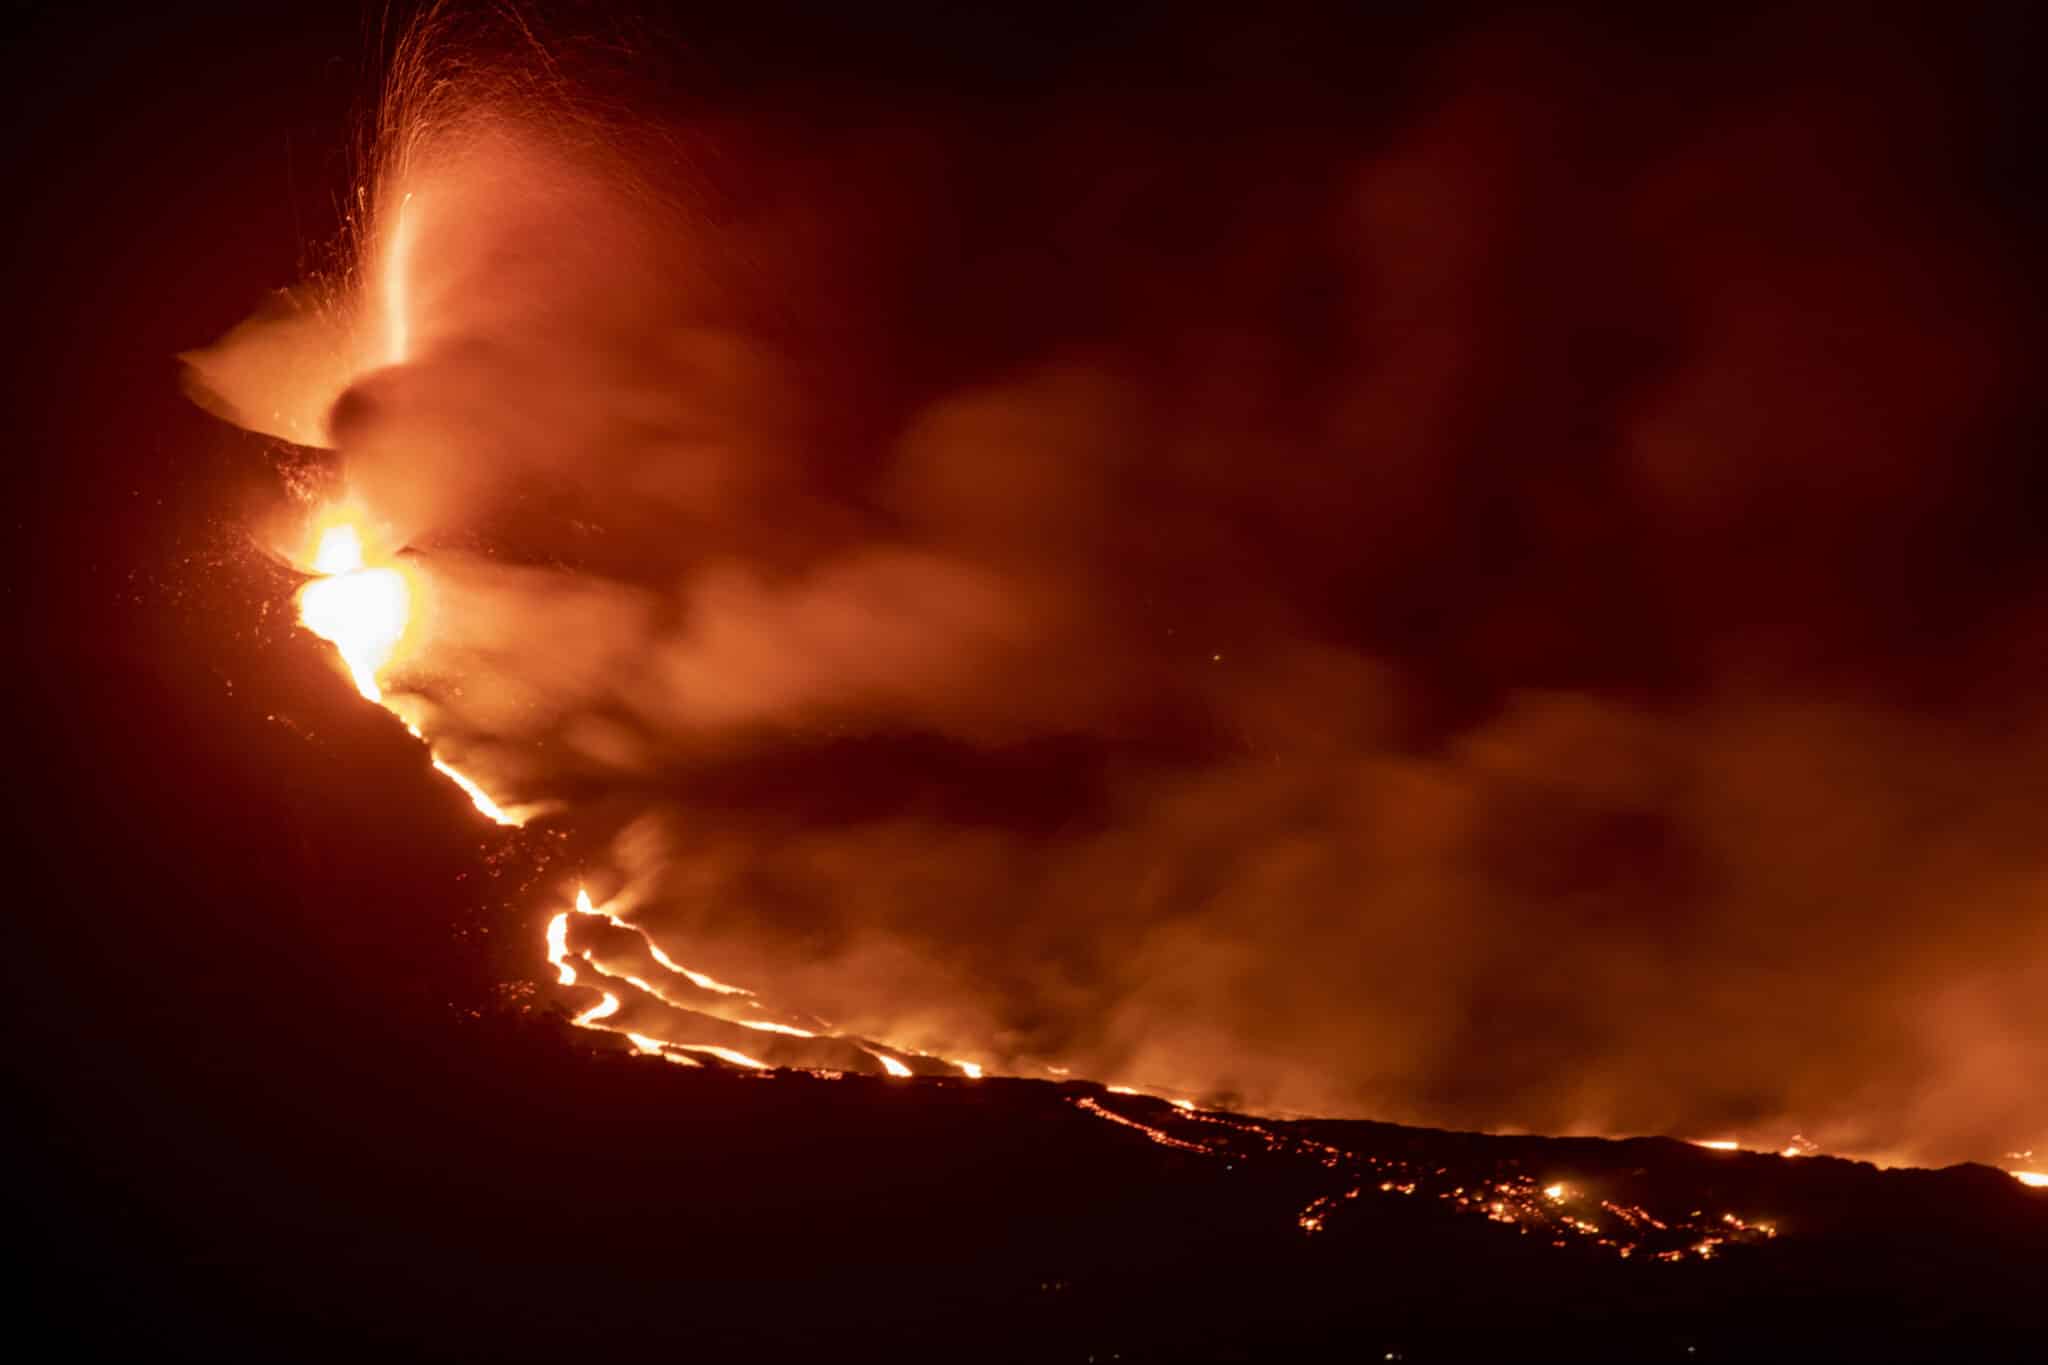 Aumenta la actividad explosiva del volcán de La Palma y no se descarta la aparición de nuevas bocas